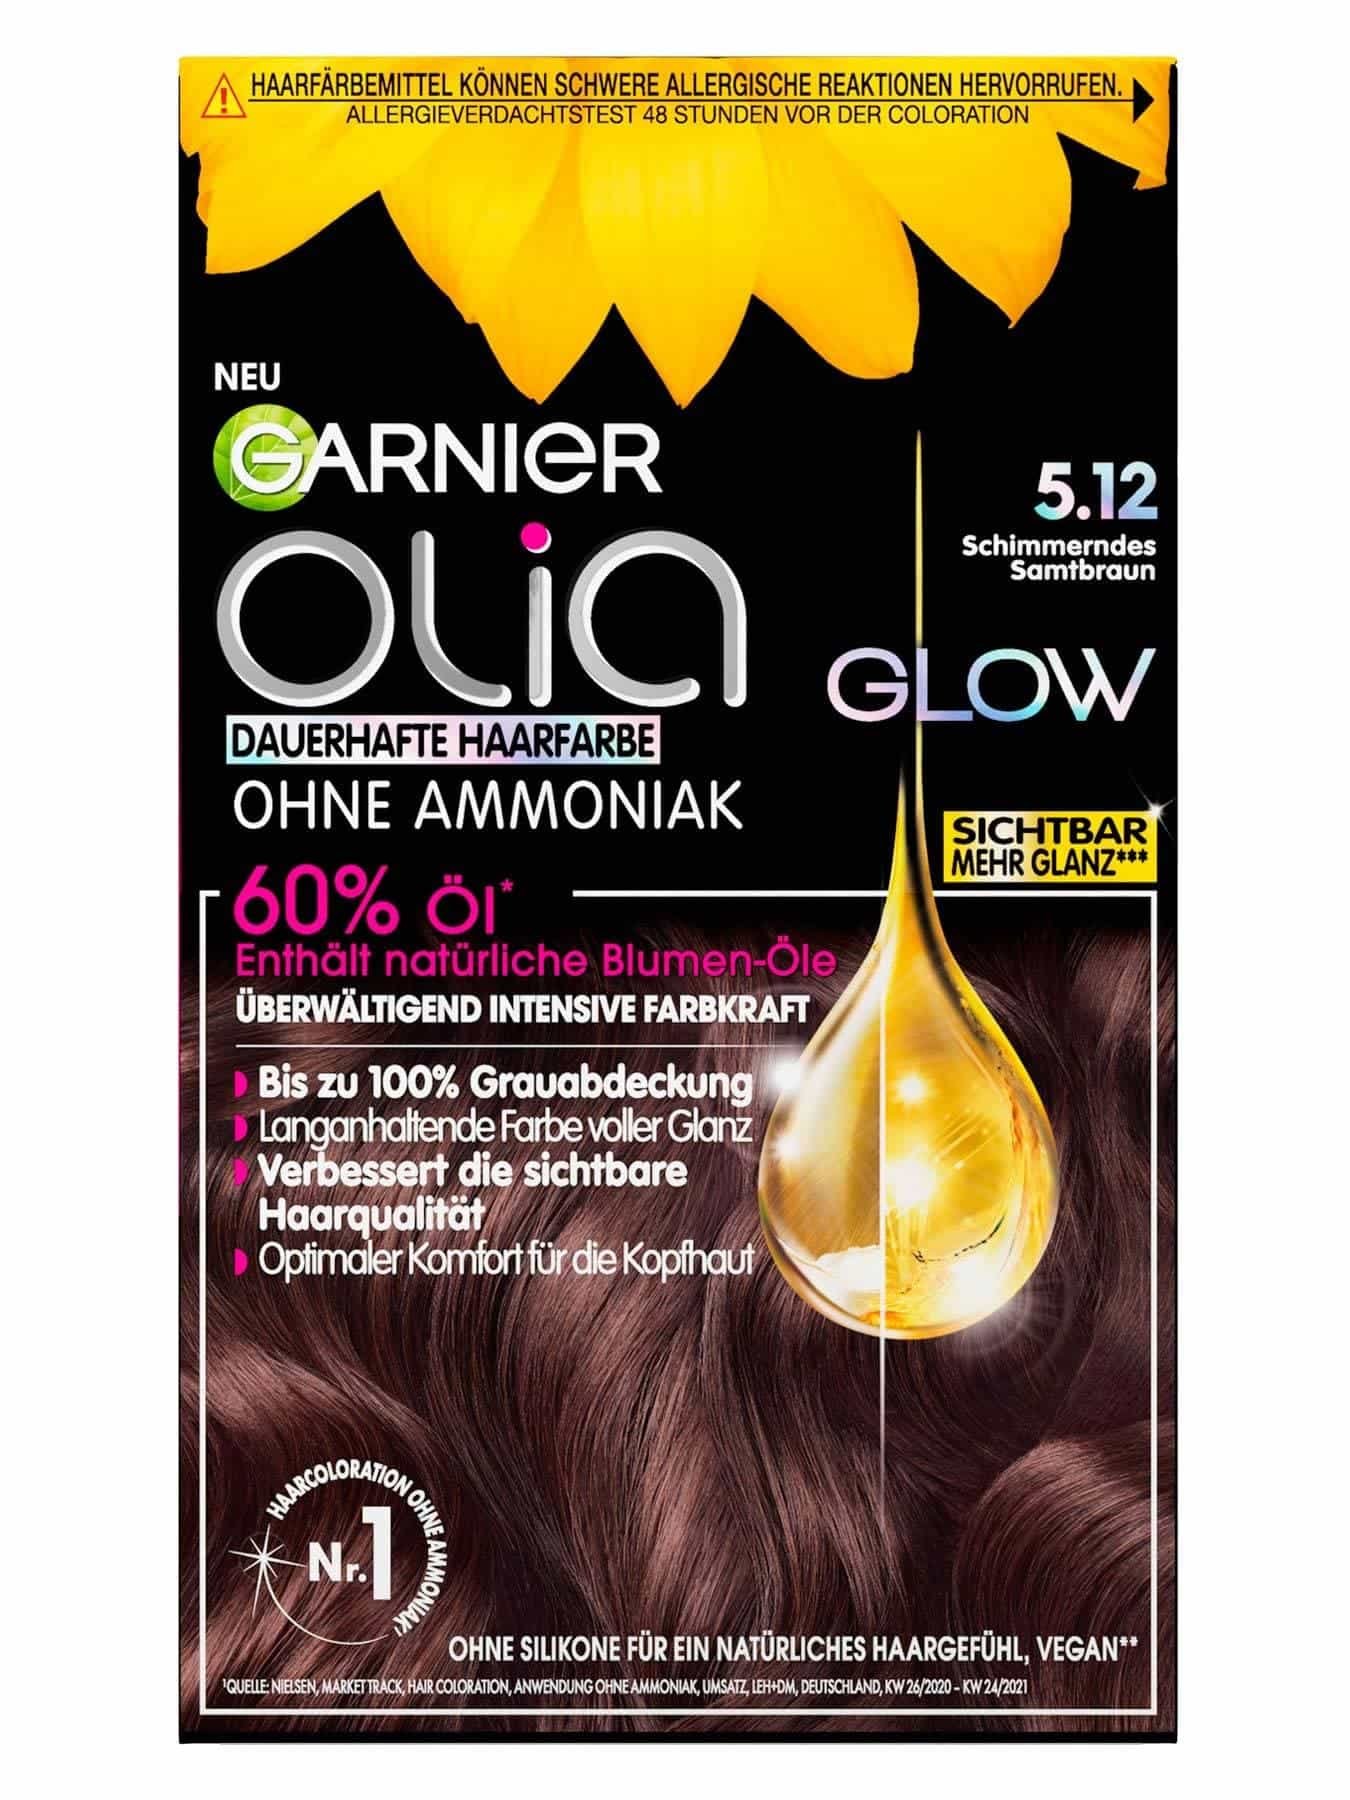 Die Garnier Haarfarben-Produkte in Garnier der Übersicht